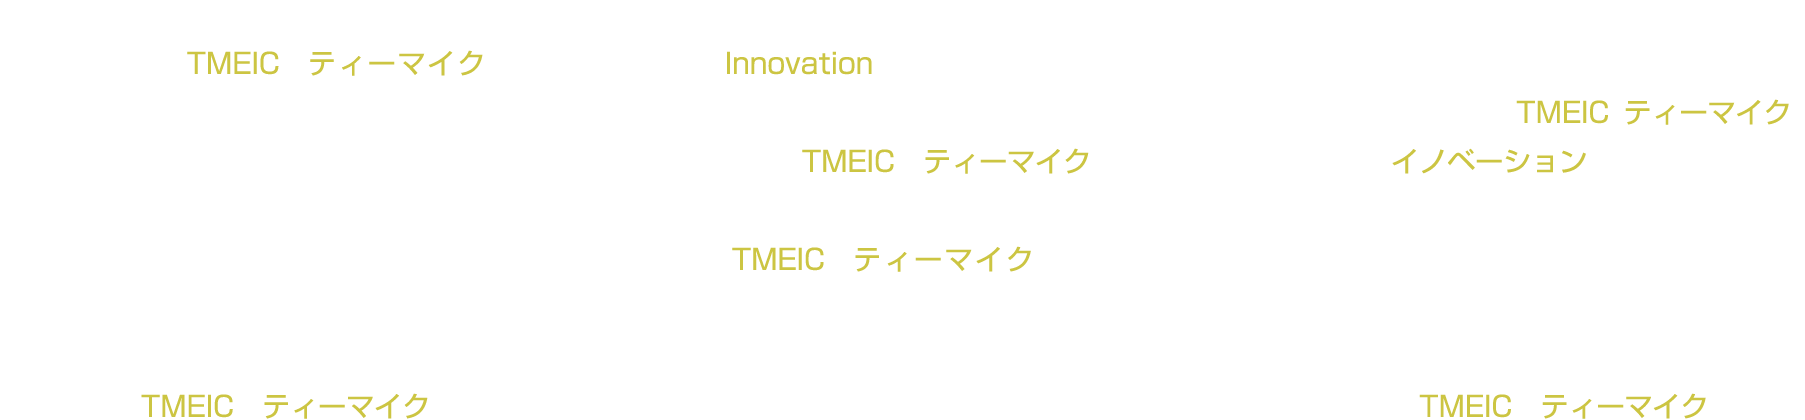 3月：カーボンニュートラルな社会を切り拓くTMEIC（ティーマイク）。新卒採用エントリー受付開始、若手社員の密着動画もWEB公開中！2月：君の力で世界を変える「Innovation」を！「カーボンニュートラル」な産業・社会の新未来を切り拓くTMEIC（ティーマイク) 1月：産業から社会を変える。日本から世界を変える。この瞬間から未来を変える。それが、TMEIC（ティーマイク）の「イノベーション」。12月：イノベーション、それは小さな一歩の積み重ね。私たちはSDGsを道しるべに持続可能な社会へ共に歩みます。TMEIC（ティーマイク）11月：TMEIC（ティーマイク）のモータ＆ドライブシステムは電力を無駄にしない。回り回って持続可能な産業・社会の未来に貢献し続けます。10月：電気をつくり、おくり、つかう。電気をささえるパワエレ技術は豊かで環境にやさしい未来の社会をささえます。TMEIC（ティーマイク）